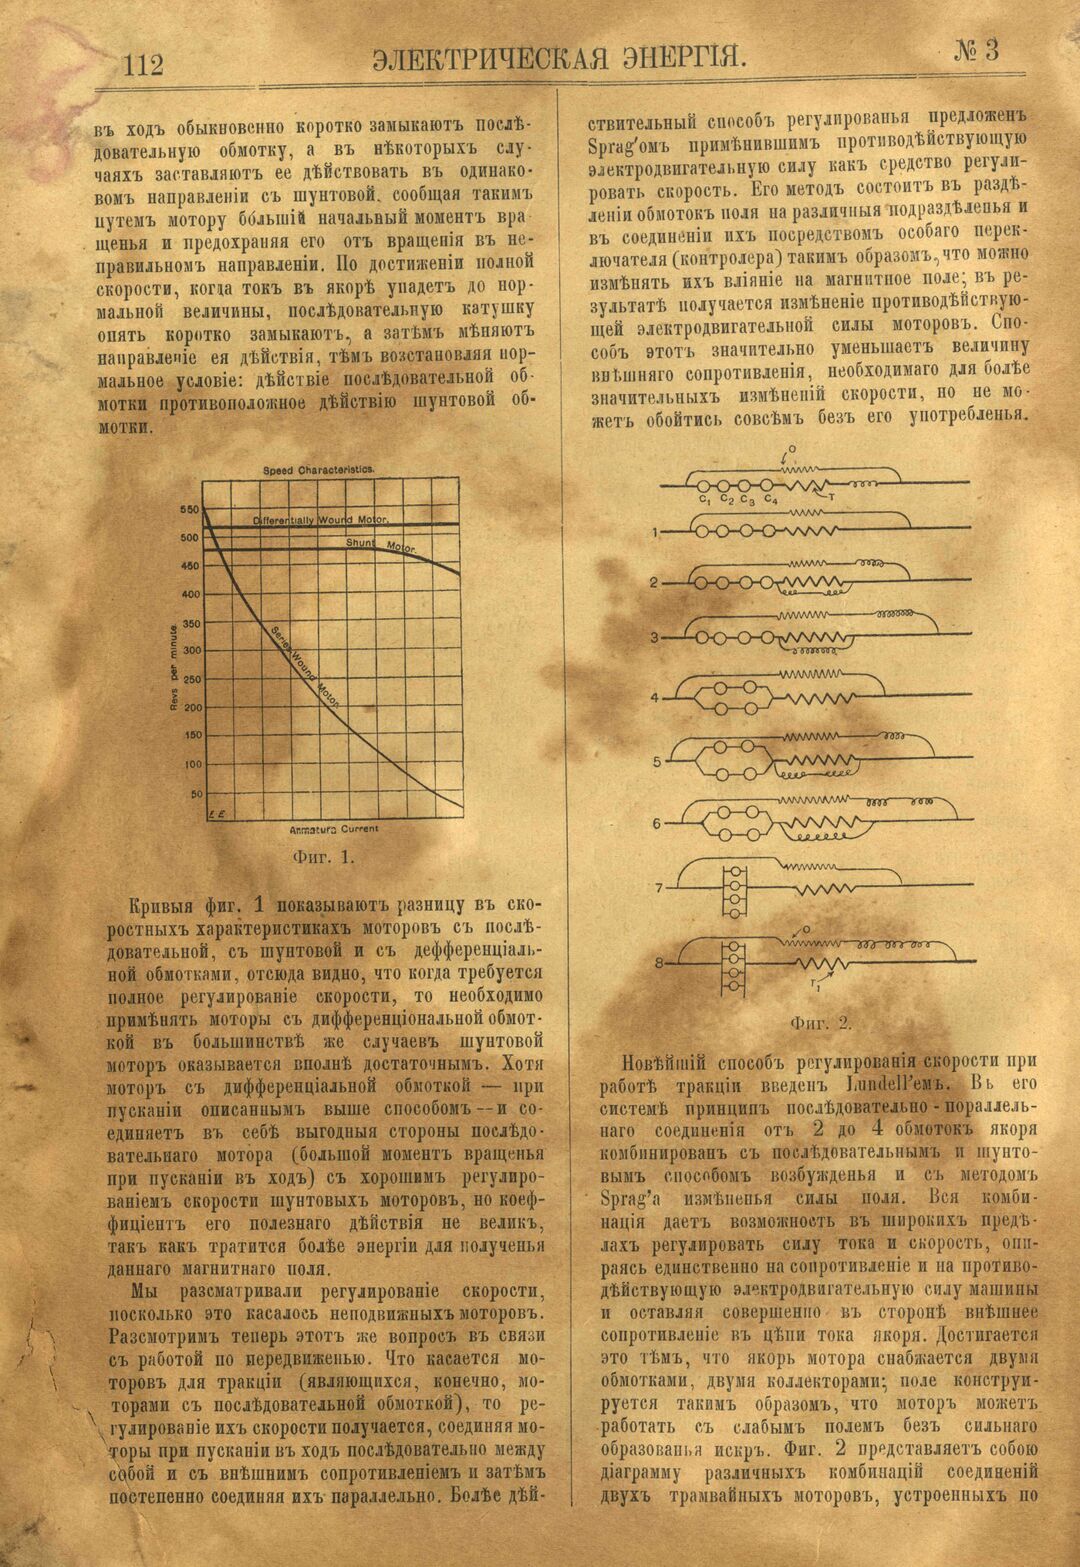 Рис. 1. Журнал Электрическая Энергiя, 3 номер, март, 1904 года, страница 112